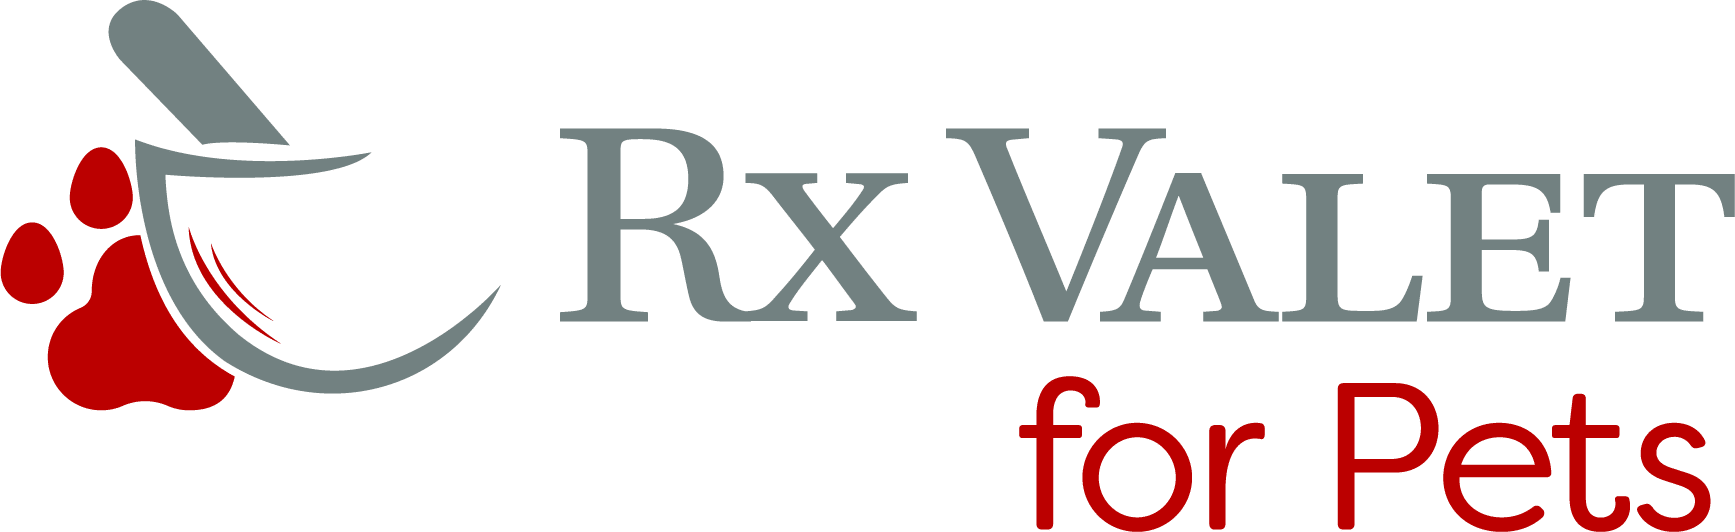 RX Valet for Pets Logo Large